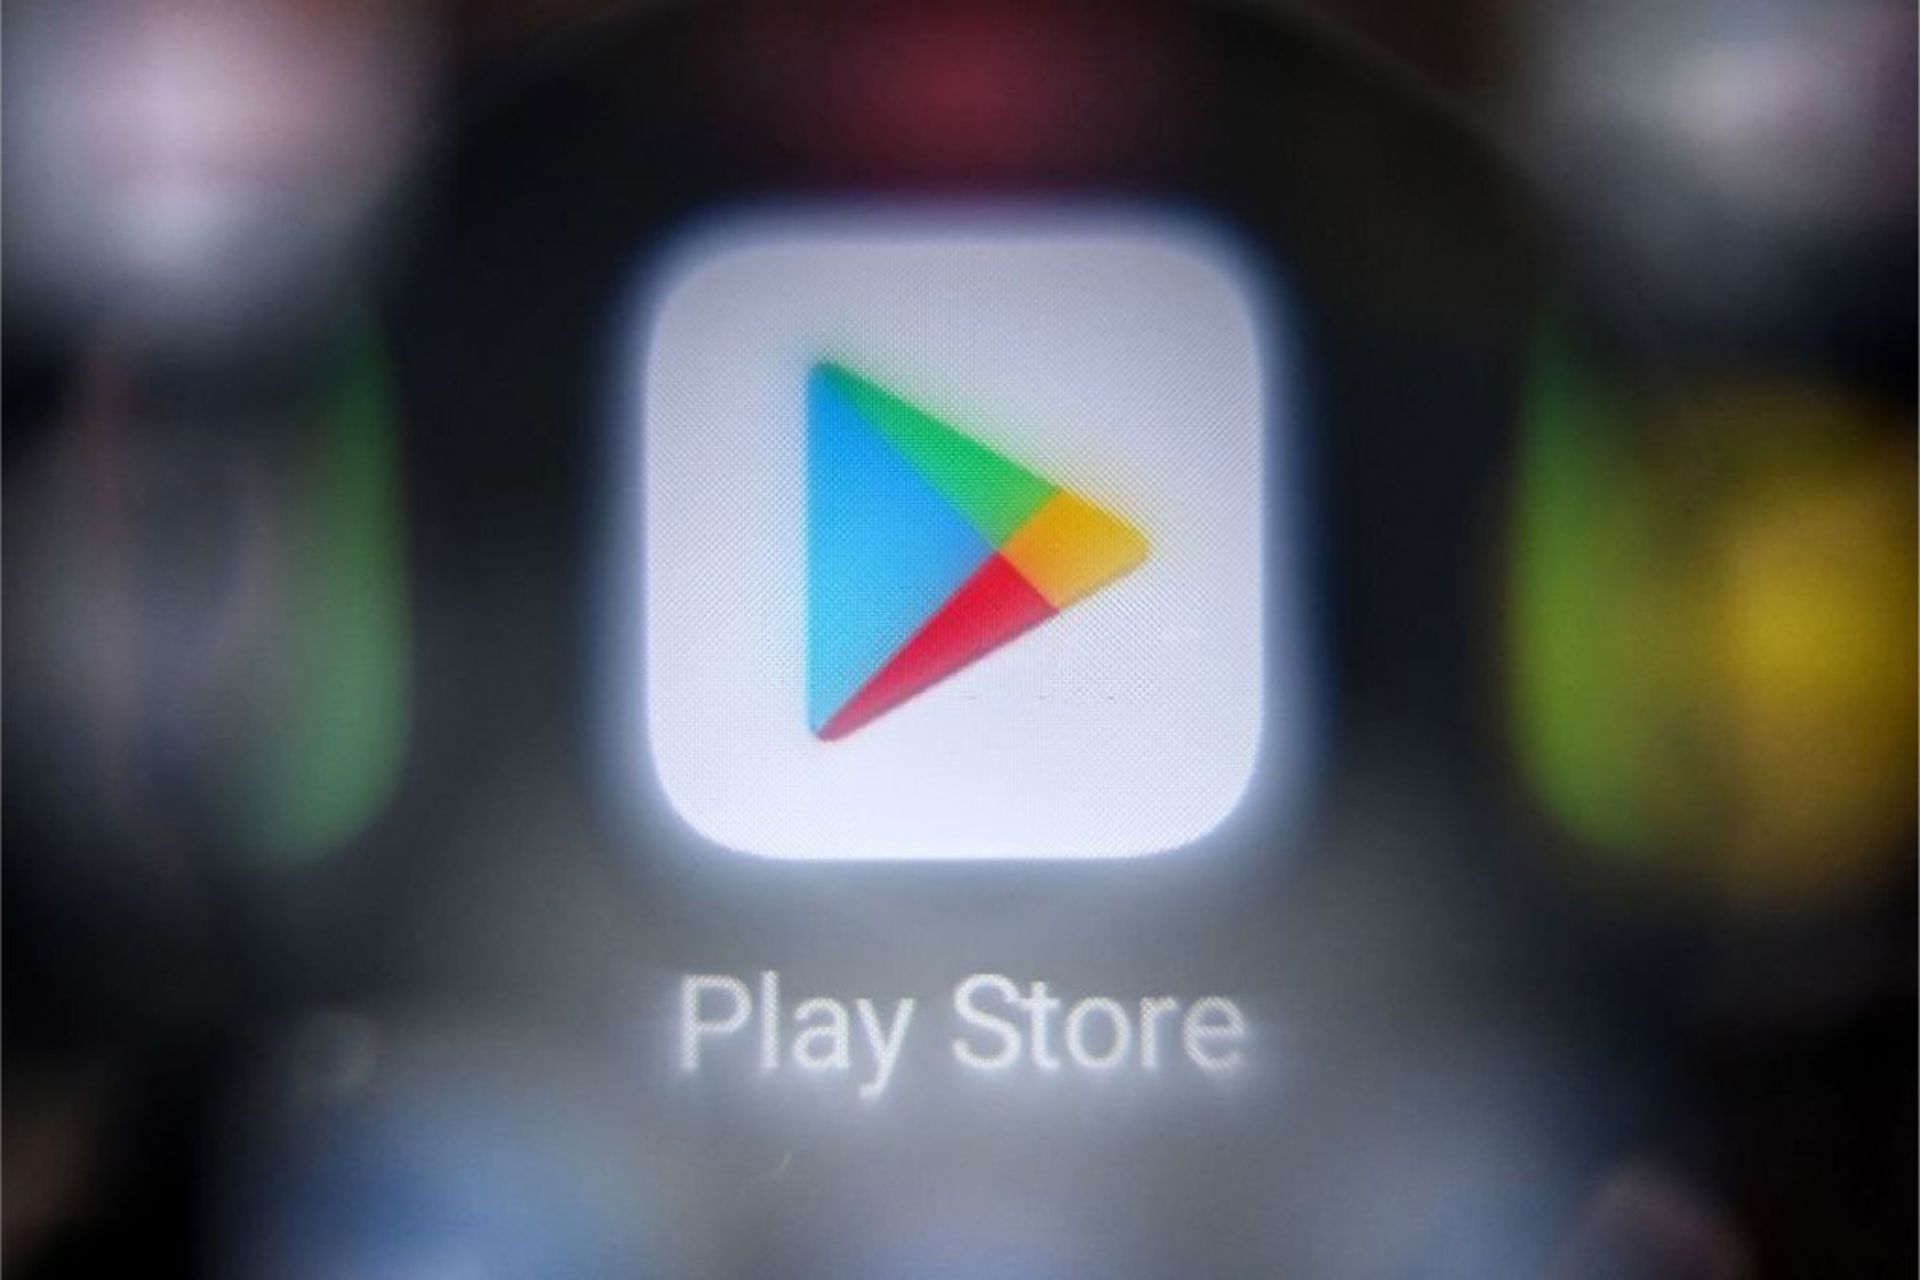 لوگو گوگل پلی استور / Google Play Store از نمای نزدیک روی نمایشگر گوشی